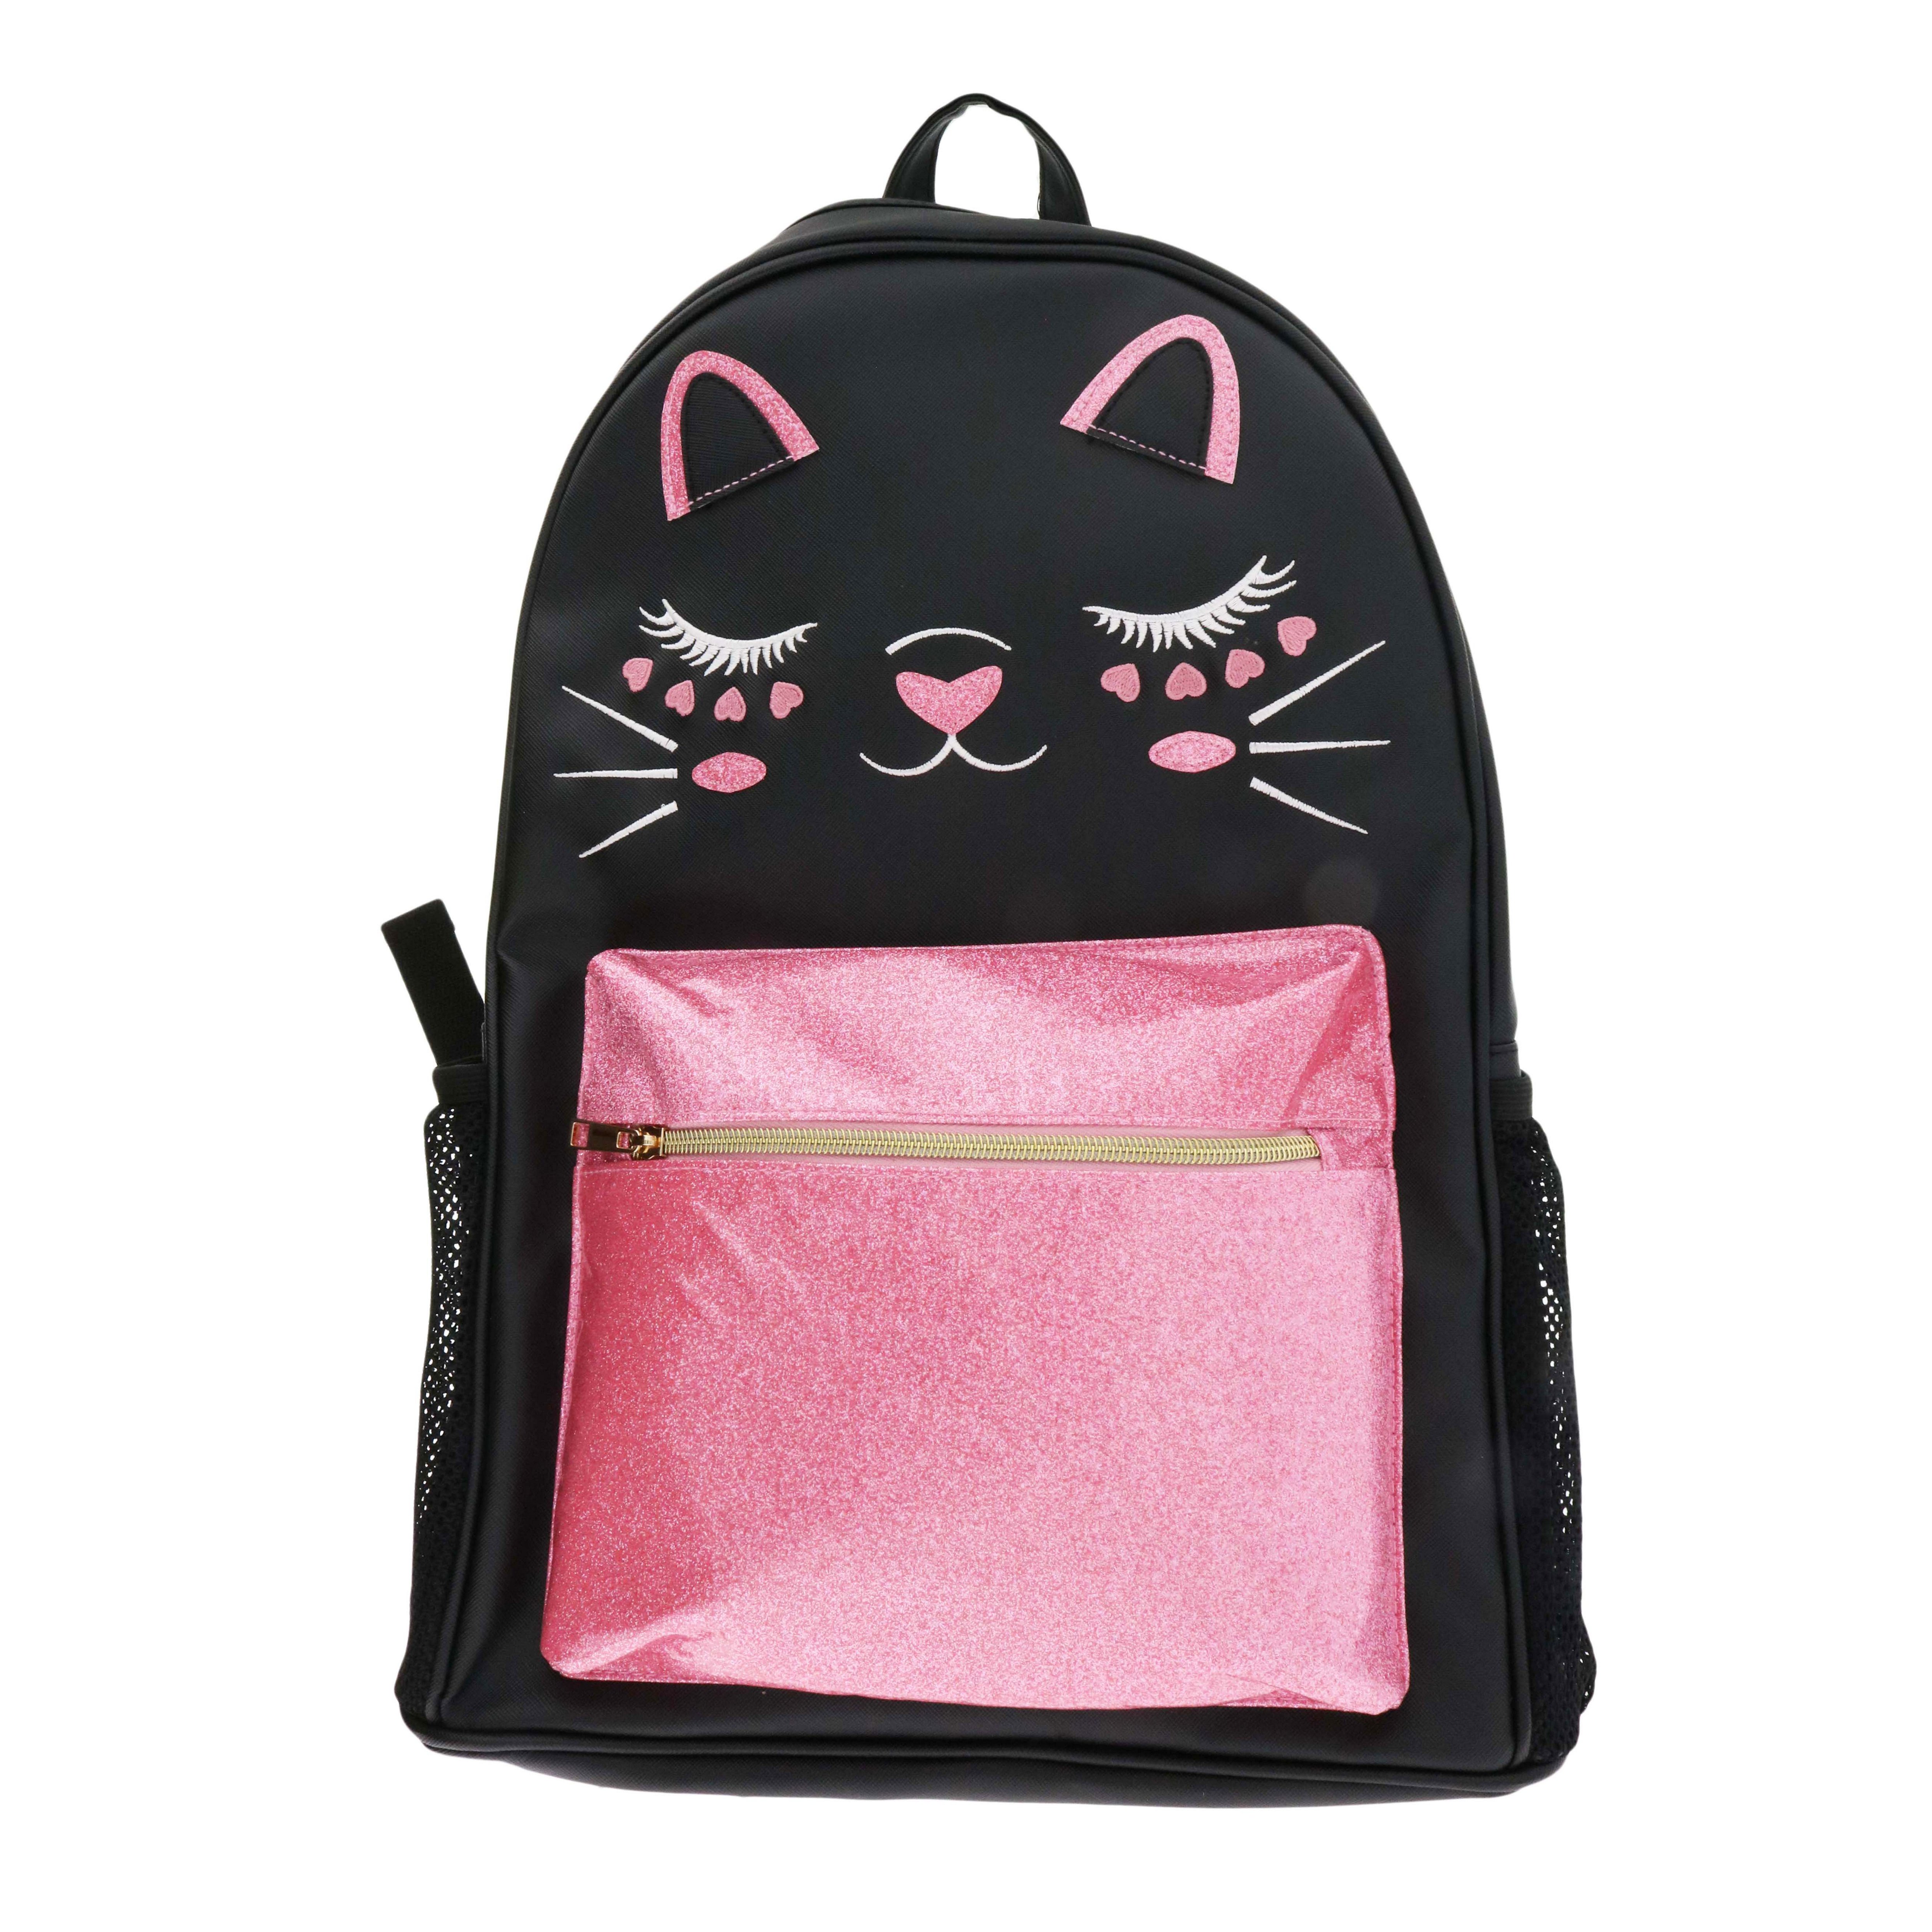 Under One Sky Black Cat Backpack - Shop Backpacks at H-E-B